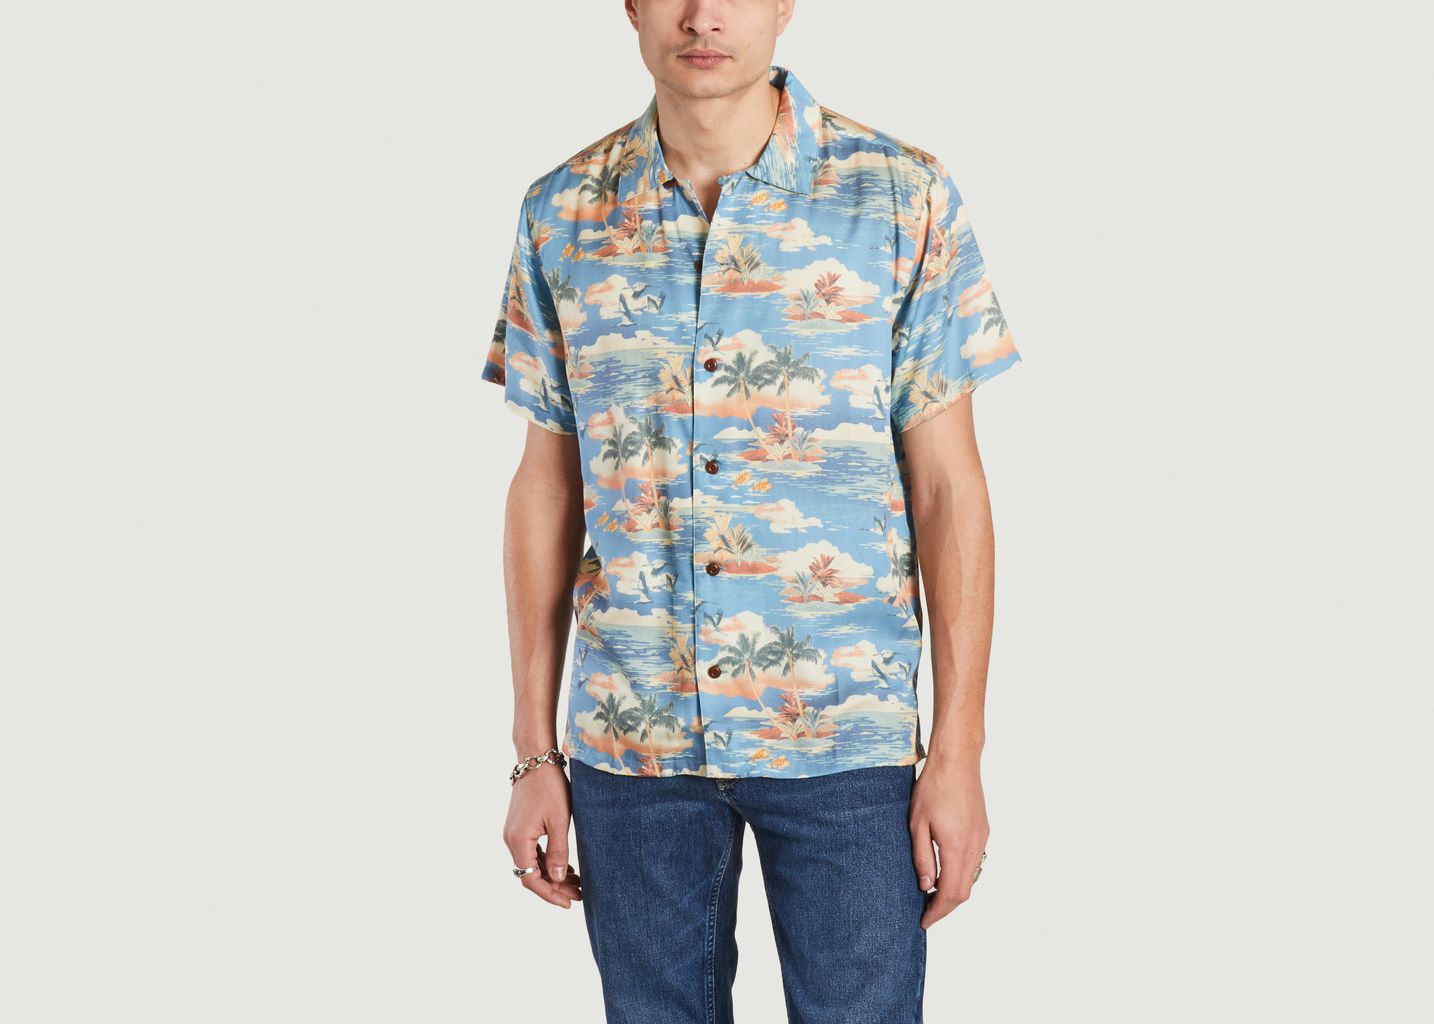 Arvid Hawaii Shirt - Nudie Jeans